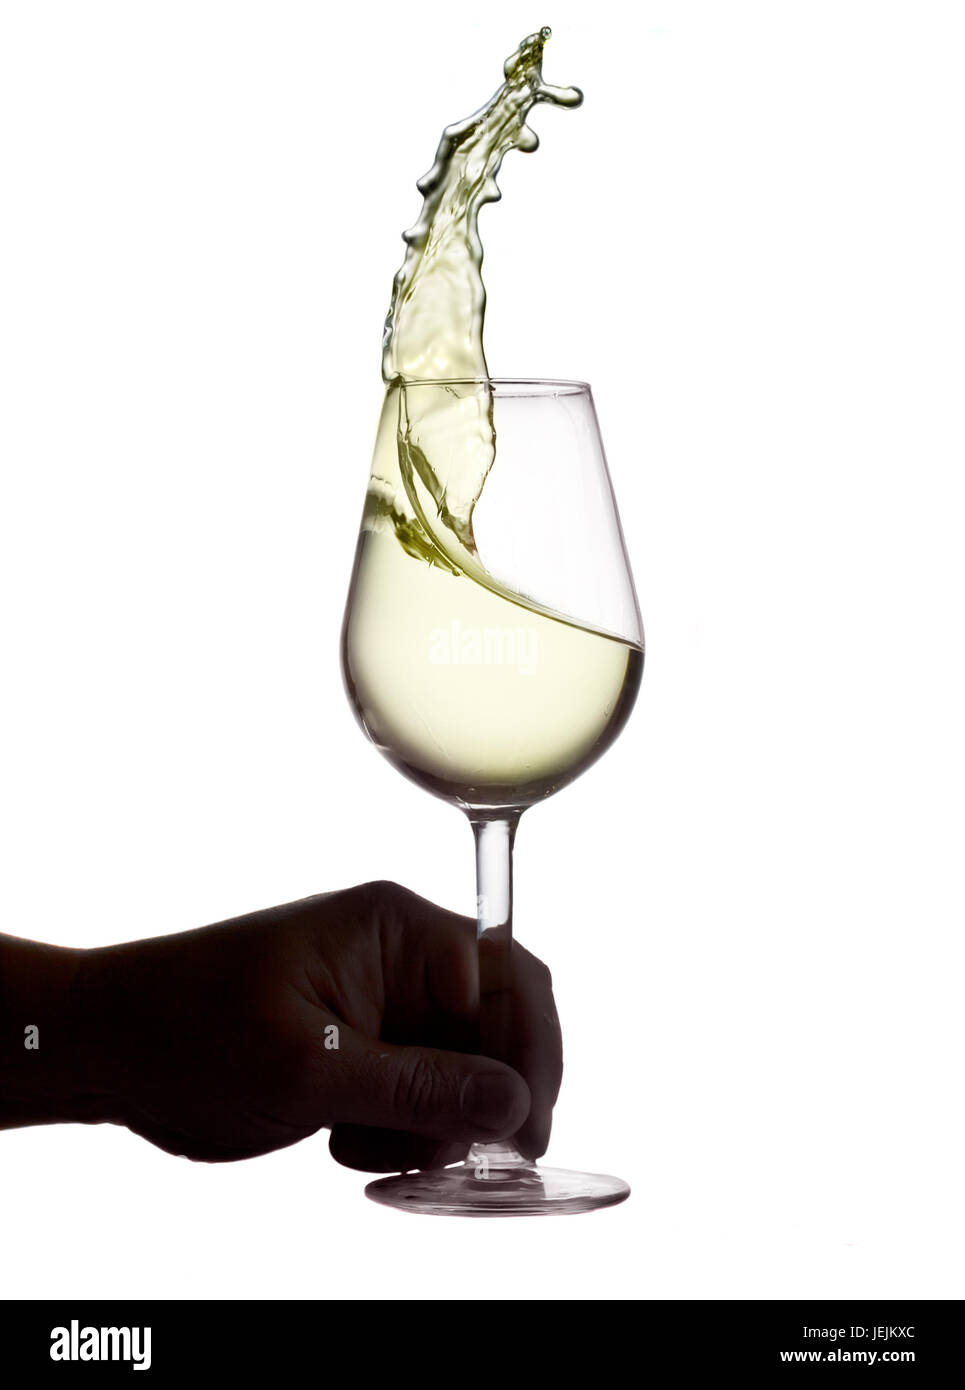 Hnad holding wine glass avec éclaboussures de vin rouge isolé sur fond blanc, concept de dégustation de vin Banque D'Images